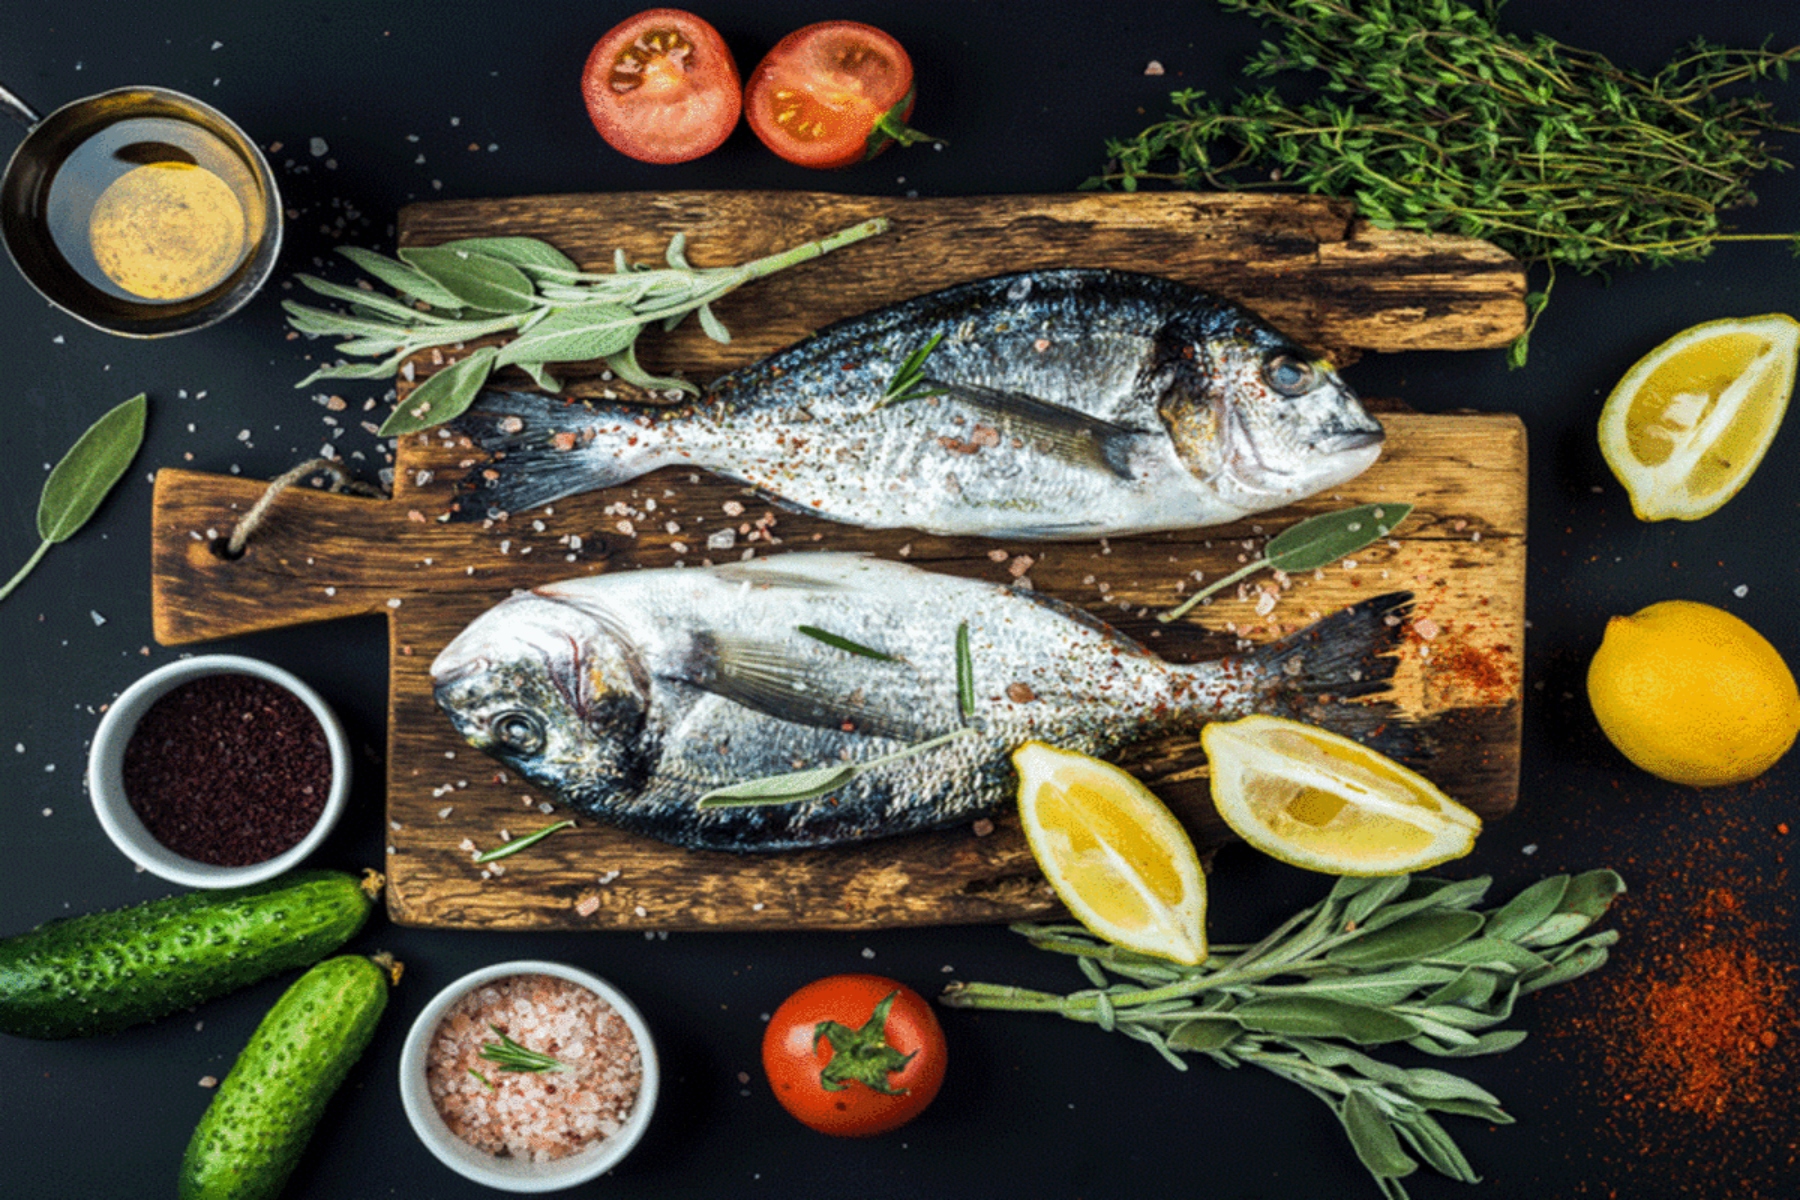 Ψάρια: Η κατανάλωση ψαριών προσφέρει πολλά οφέλη για την υγεία μας